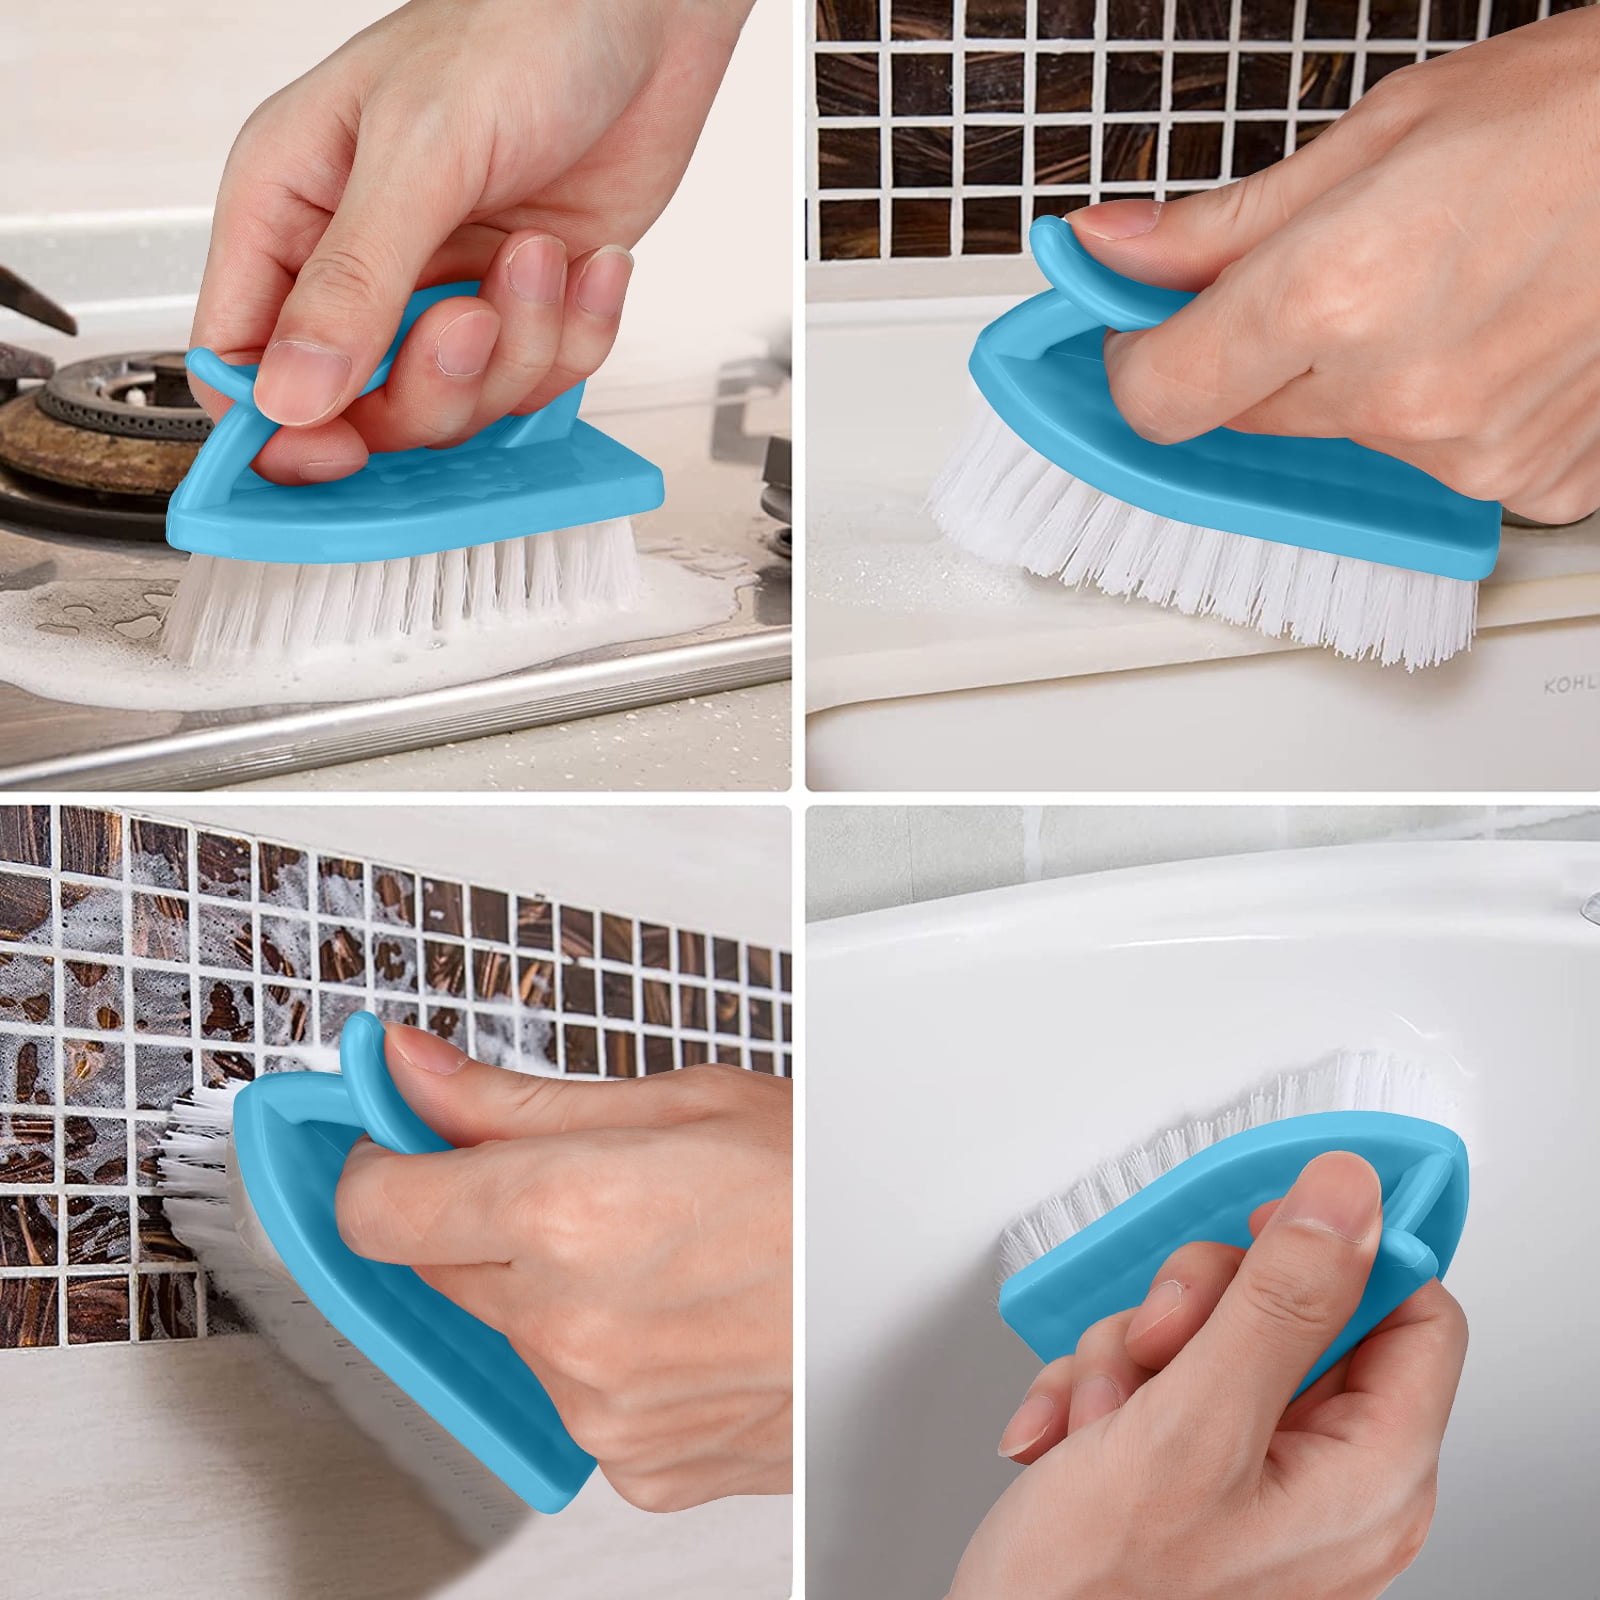 Shengxiny Cleaning Brushes Clearance Household Plastic Laundry Brush Cleaning Brush Hard Bristle Multi-functional Washbasin Brush Shoe Brush Clothes